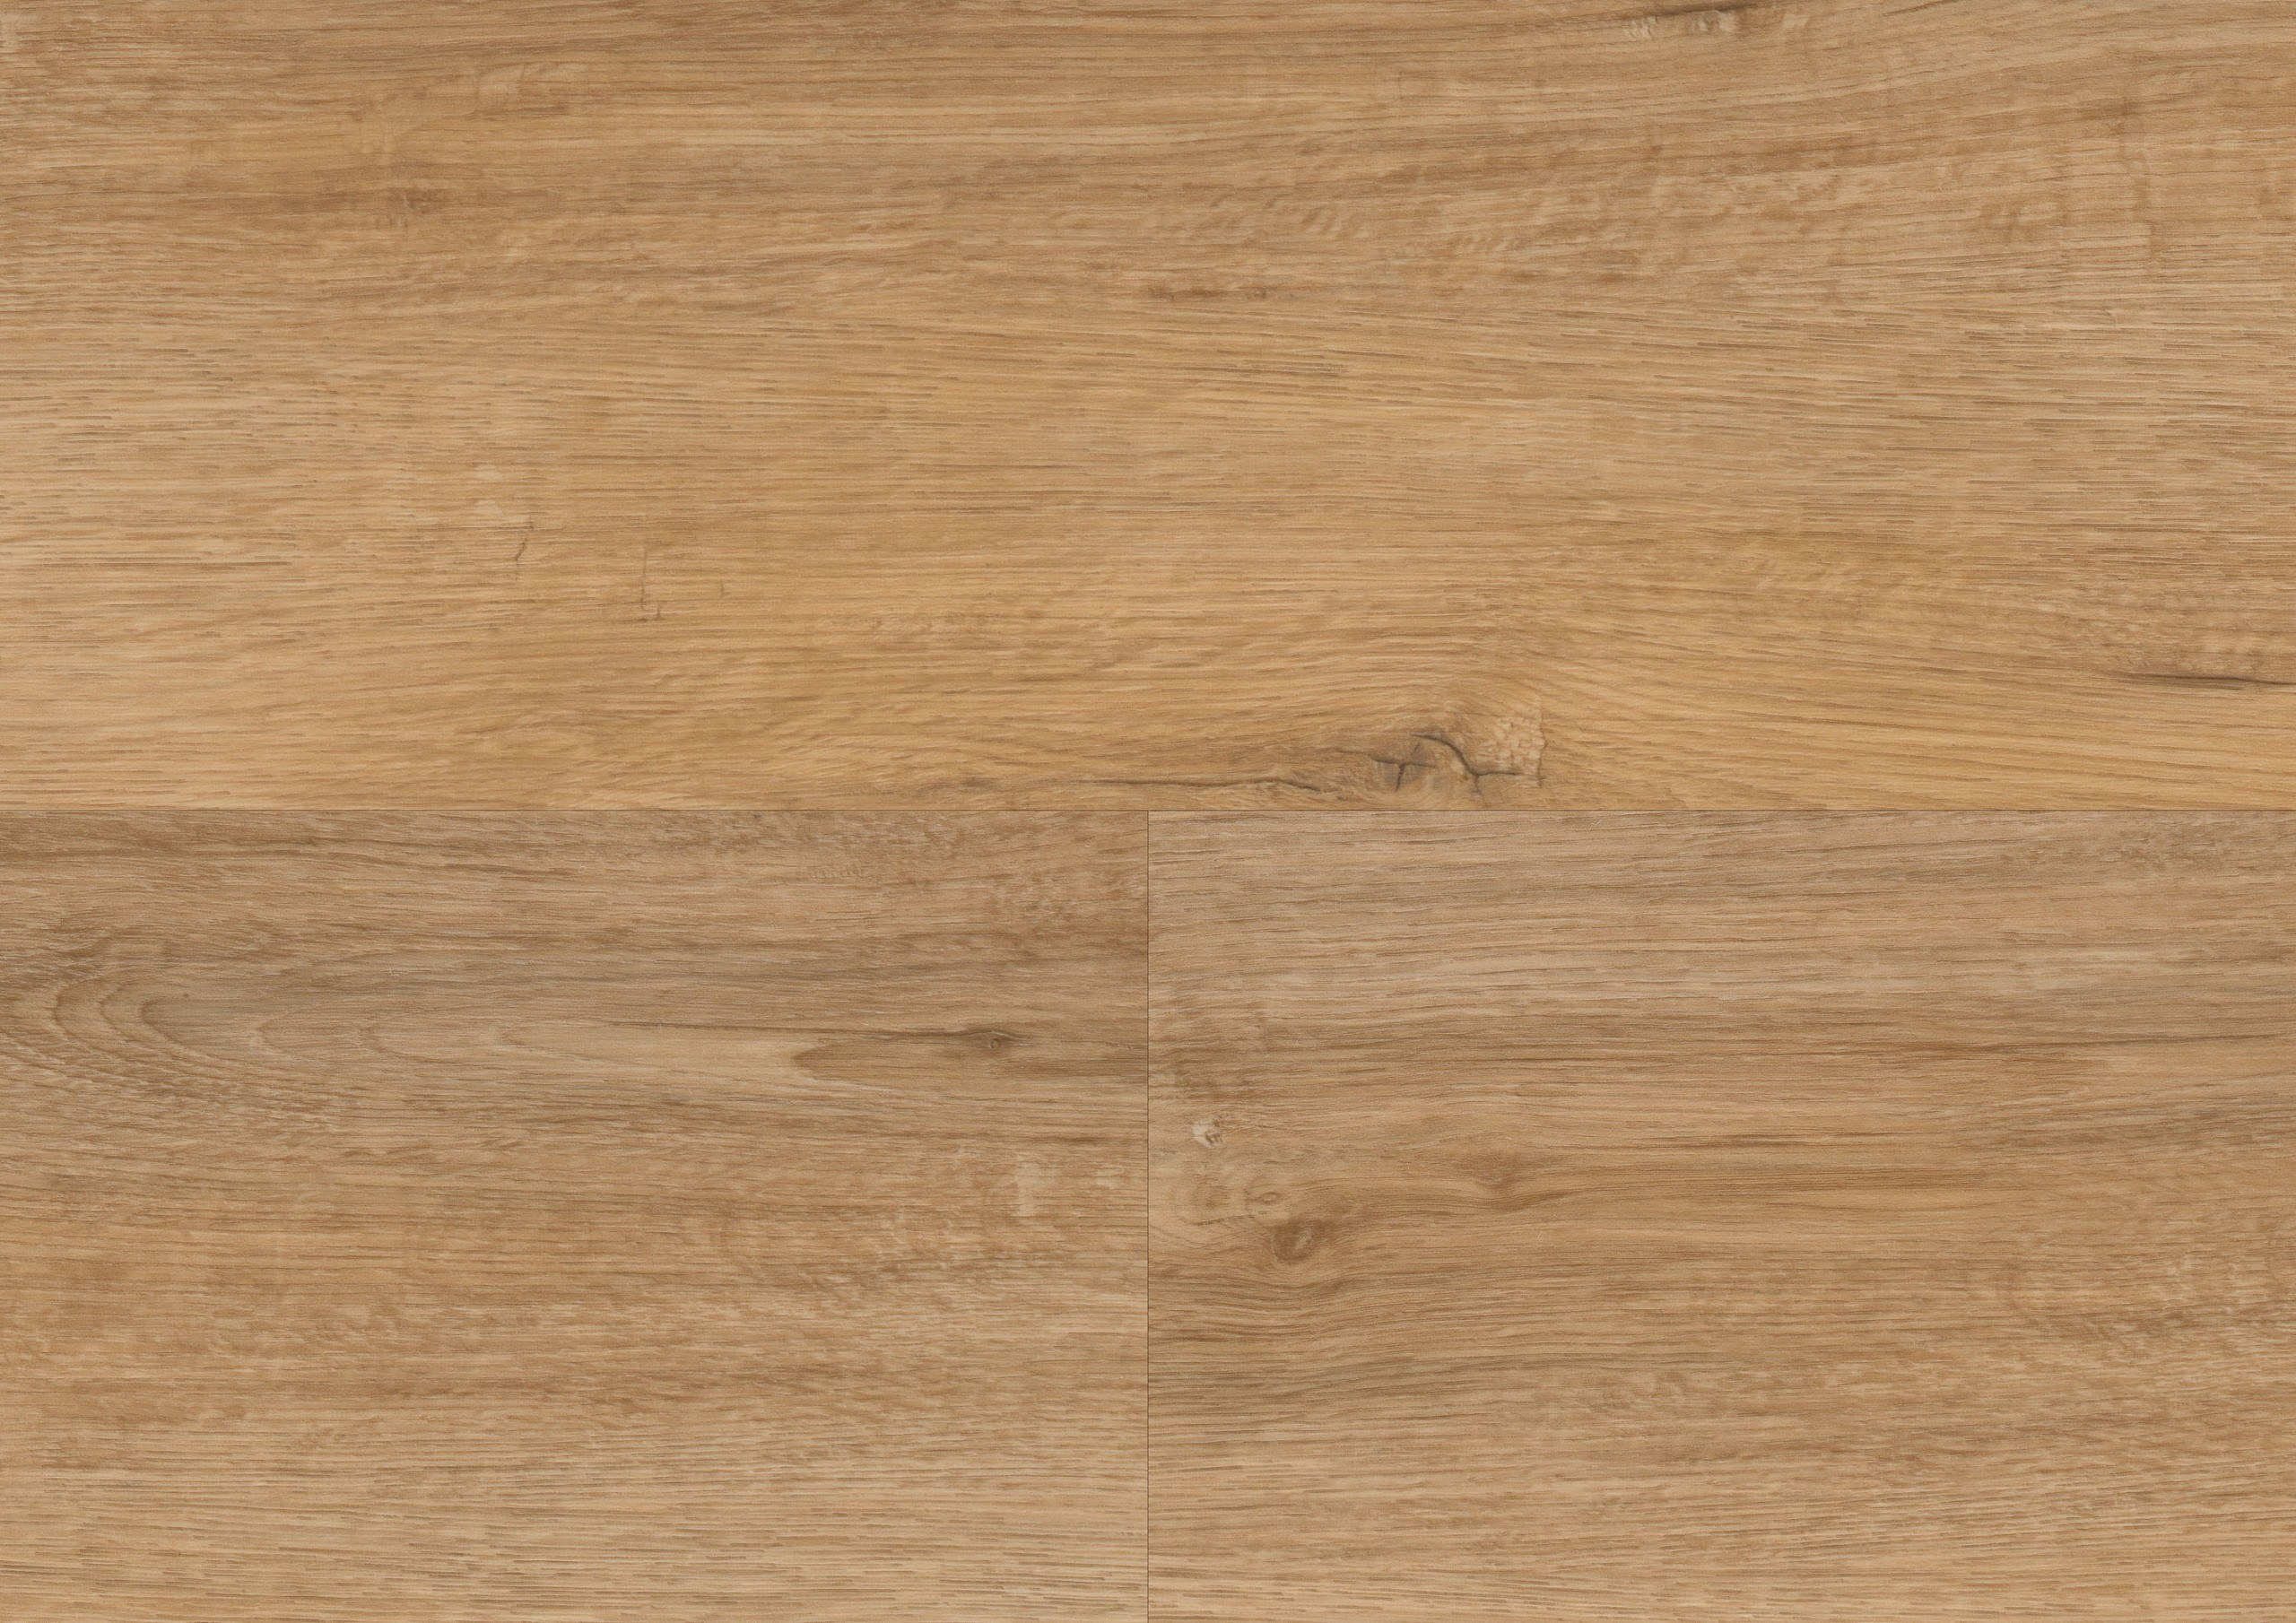 Wineo 600 wood Designboden Art. DB184W6 Klebeplanke Warm Place 2 mm